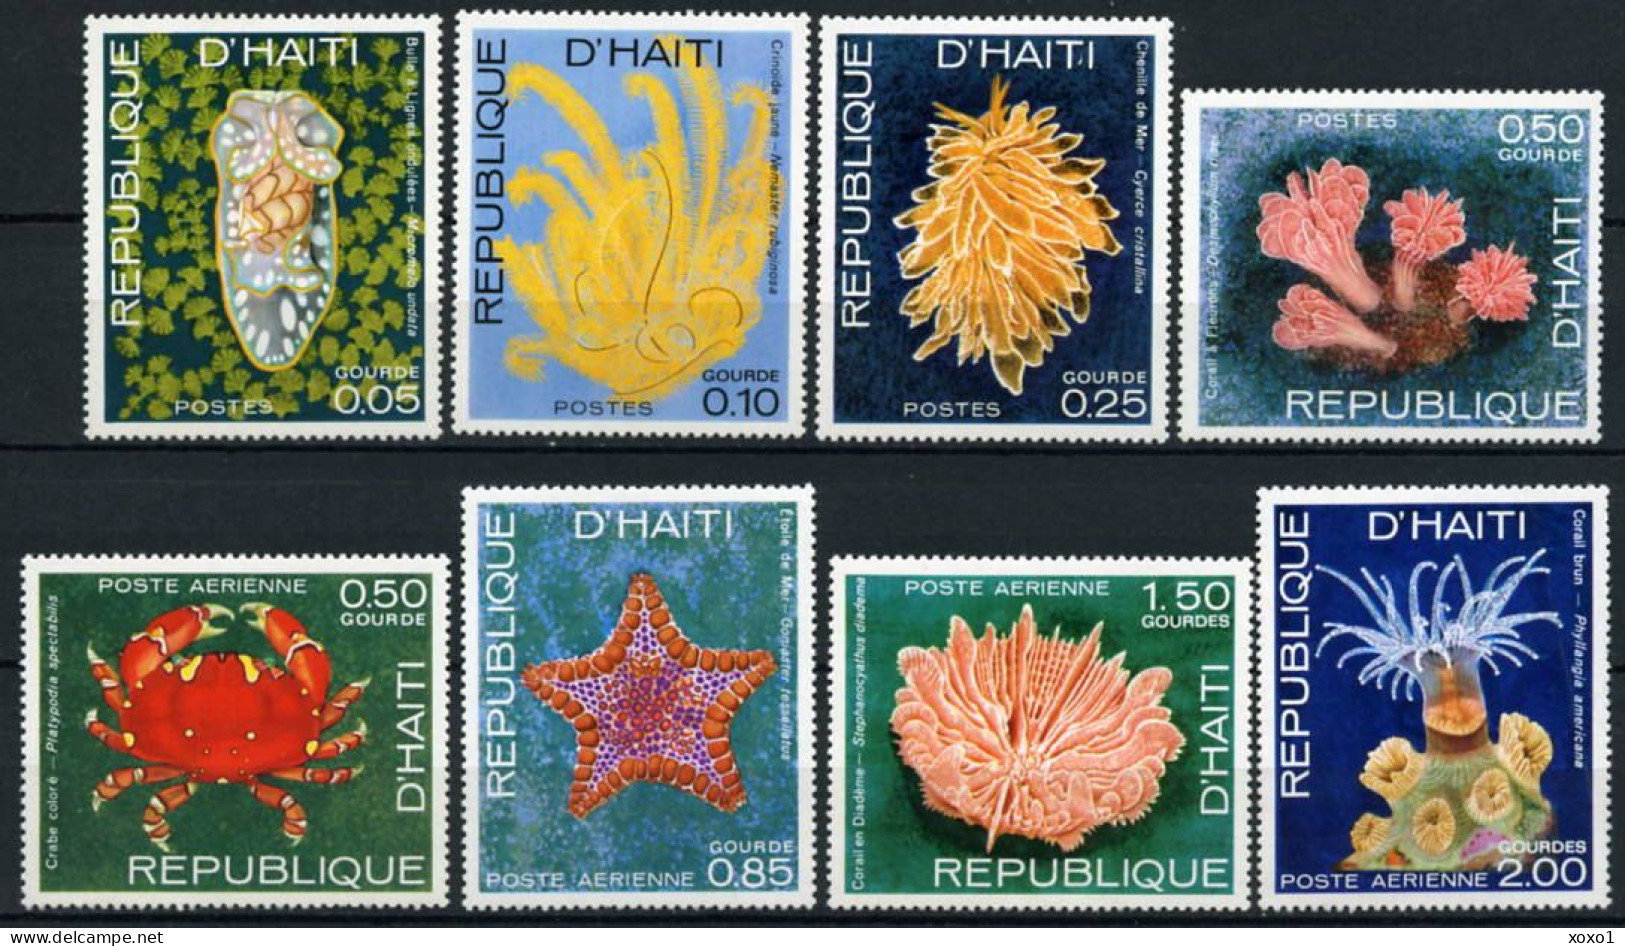 Haiti 1973 MiNr. 1225 - 1232  Marine Life, Crustaceans 8v  MNH** 3.20 € - Vie Marine